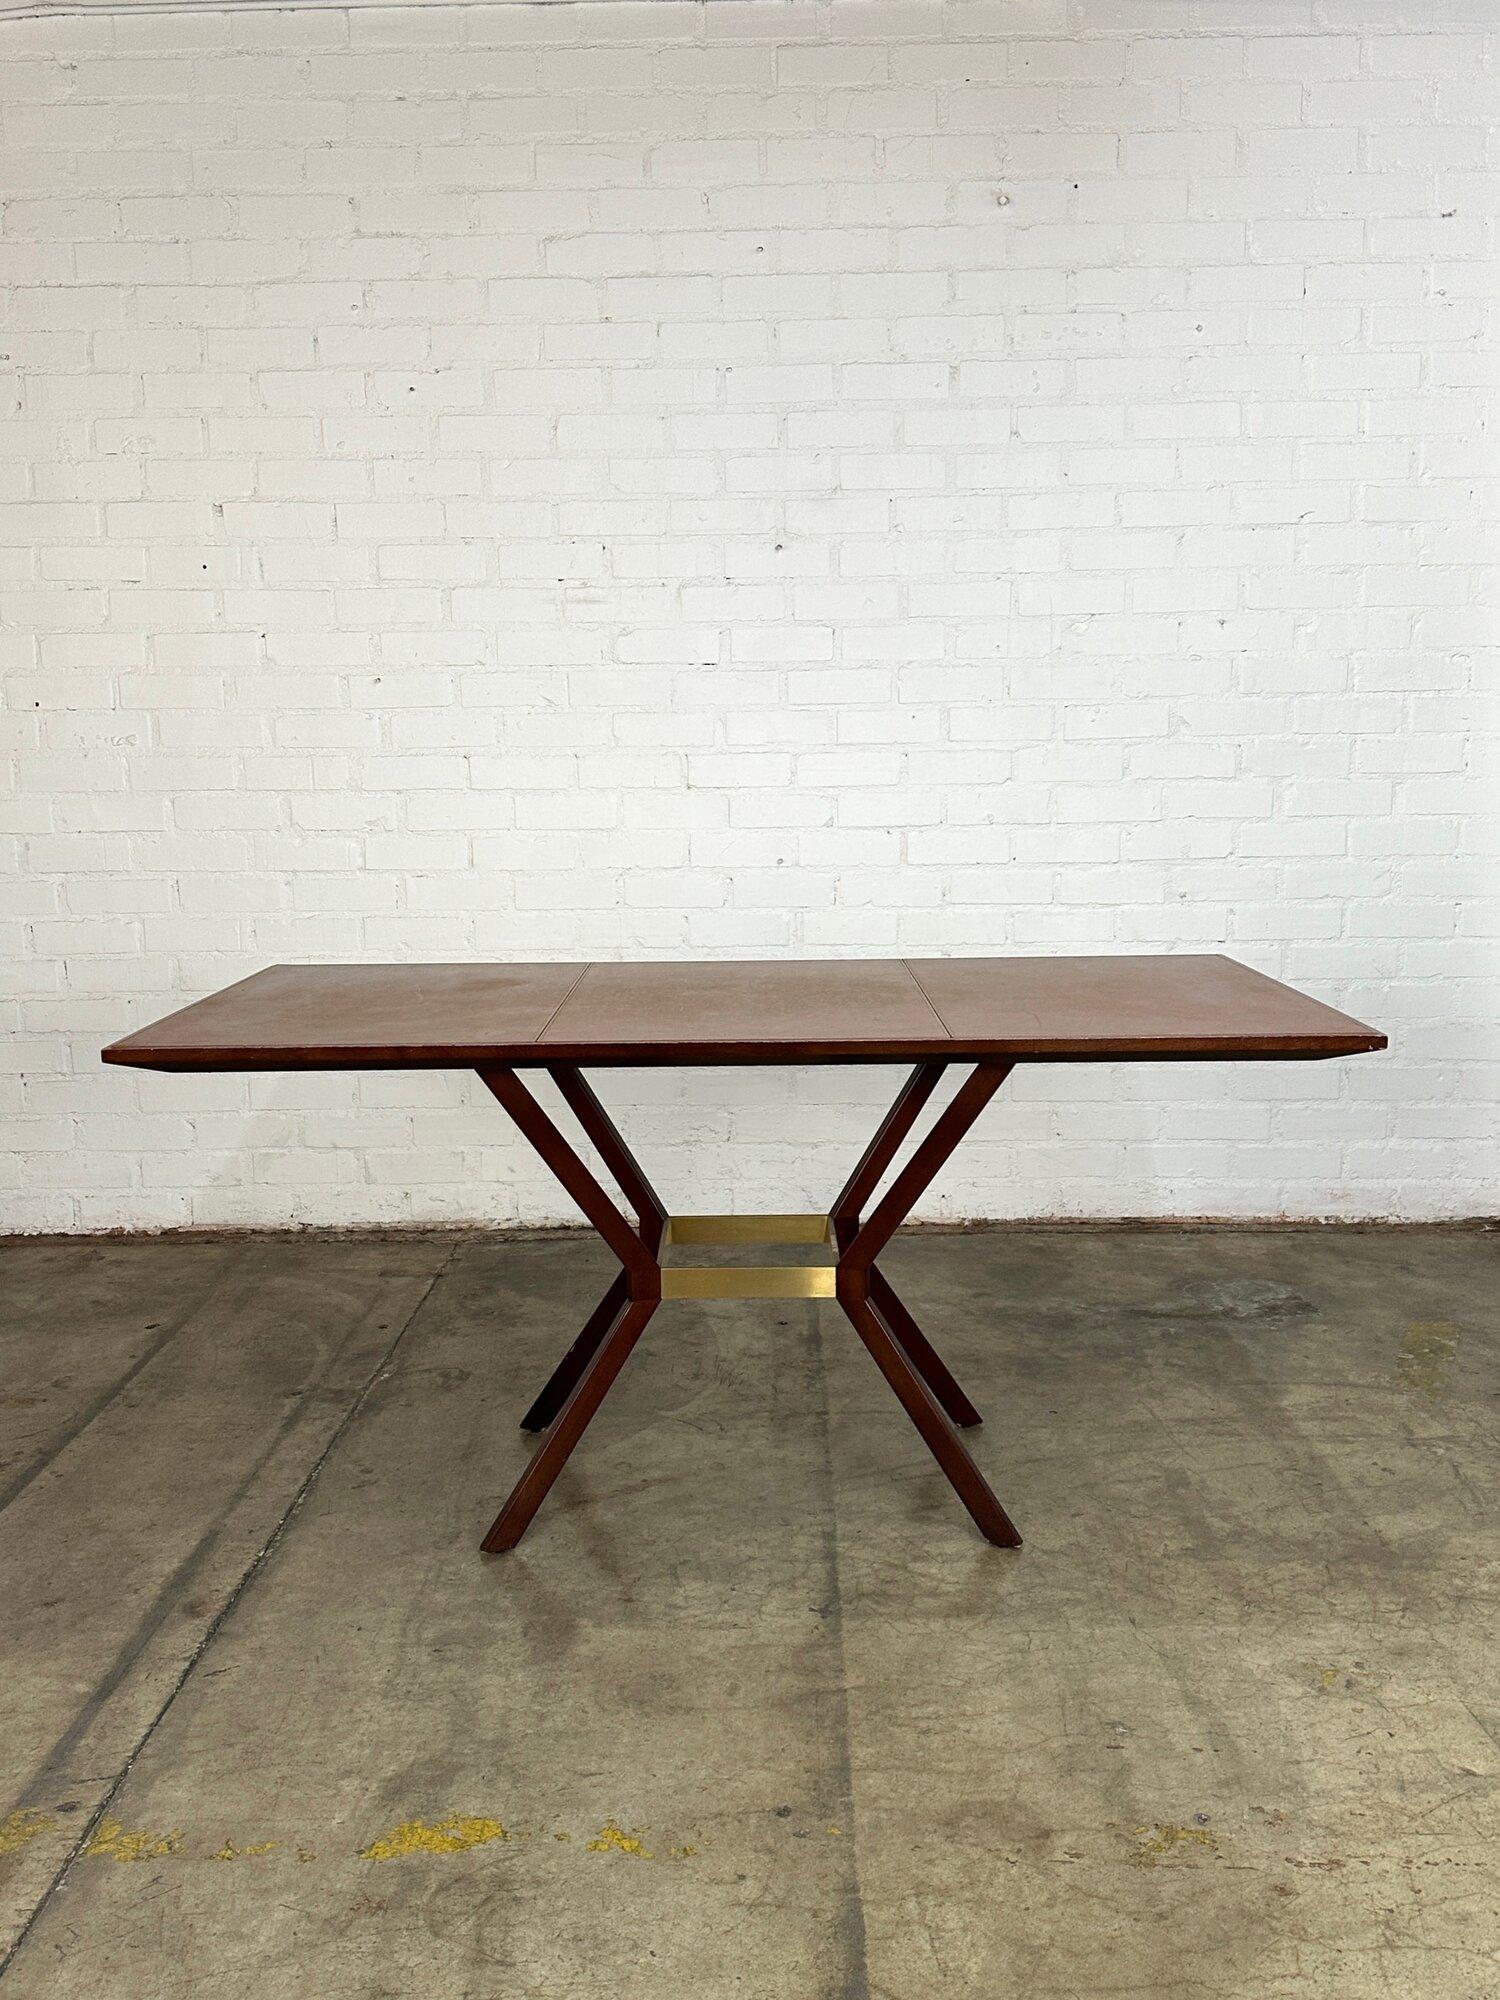 W71 D33.5 H33.5

Table d'exposition By Vintage en bon état. La table présente de légères entailles au niveau du bois et de la finition, mais elle est bien présentée dans l'ensemble. La table est structurellement saine et  robuste. Les supports de